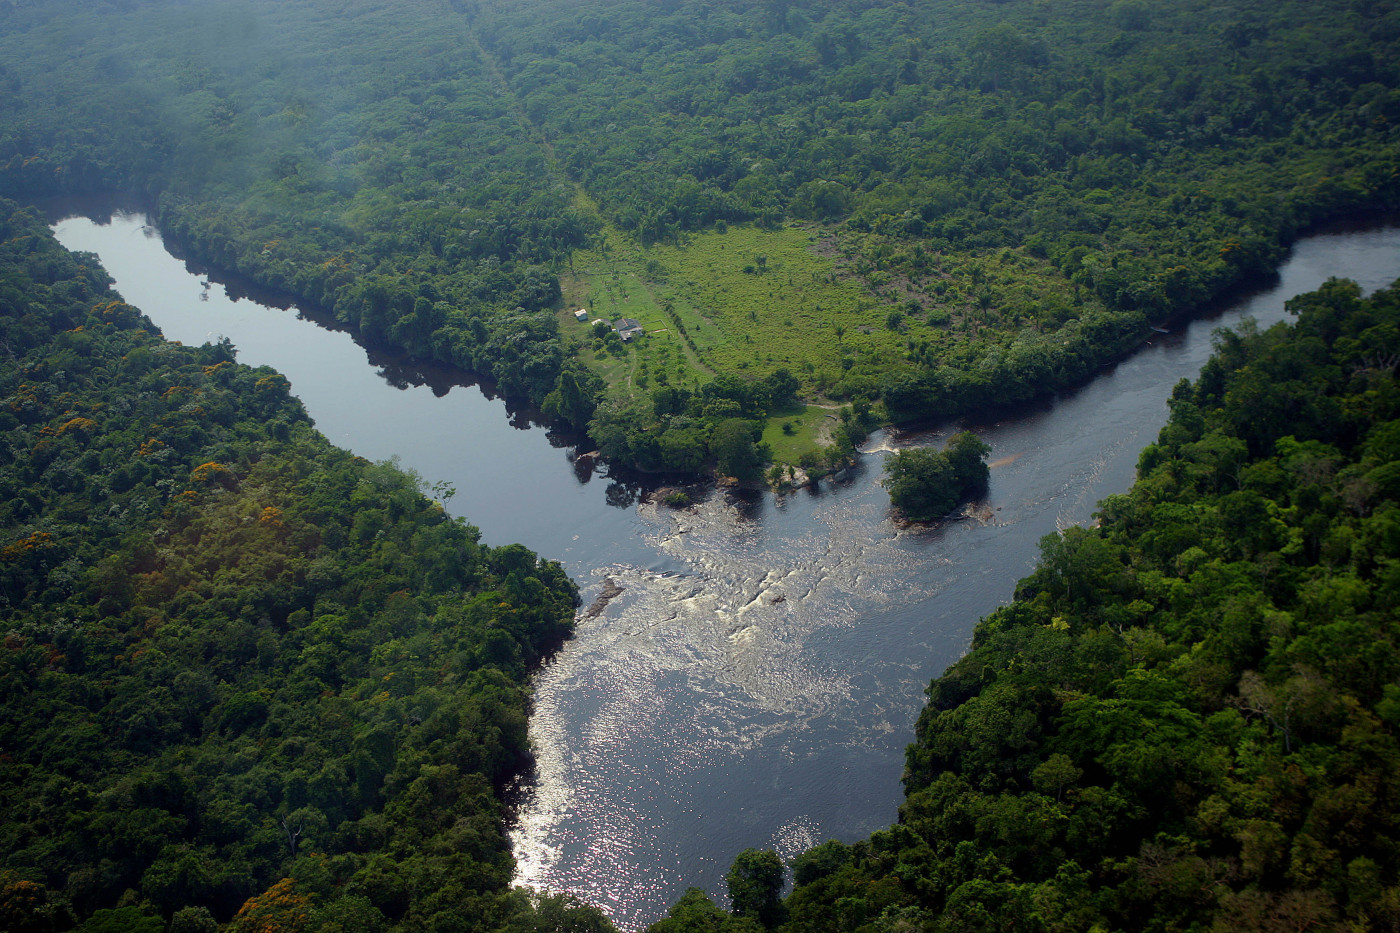 Foto tirada de cima de duas nascentes de um rio que se encontram no meio, onde ele fica mais cheio. Em volta, uma floresta com bastante vegetação